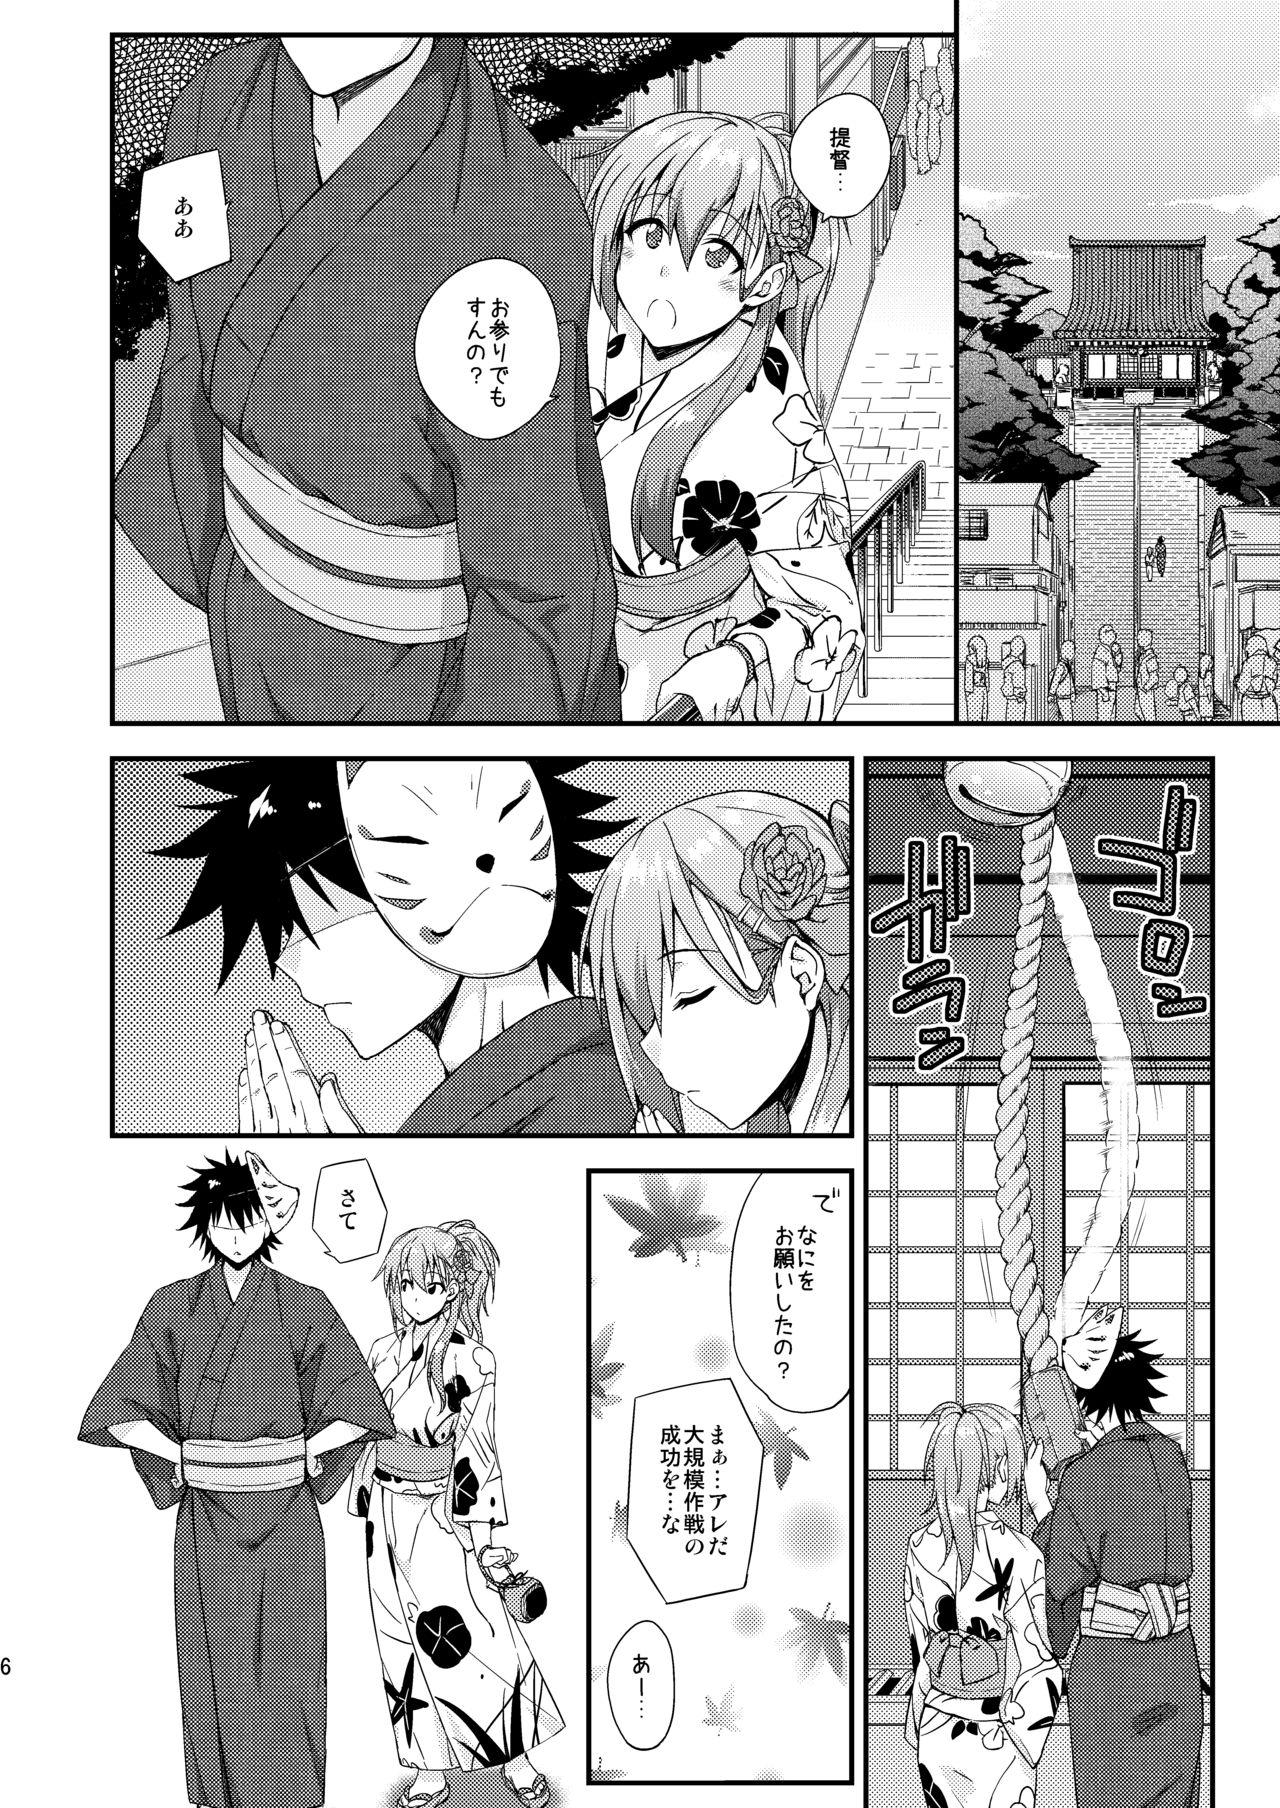 Tites Suzuya to Dousuru? Nani Shichau? 13 - Kantai collection Three Some - Page 5